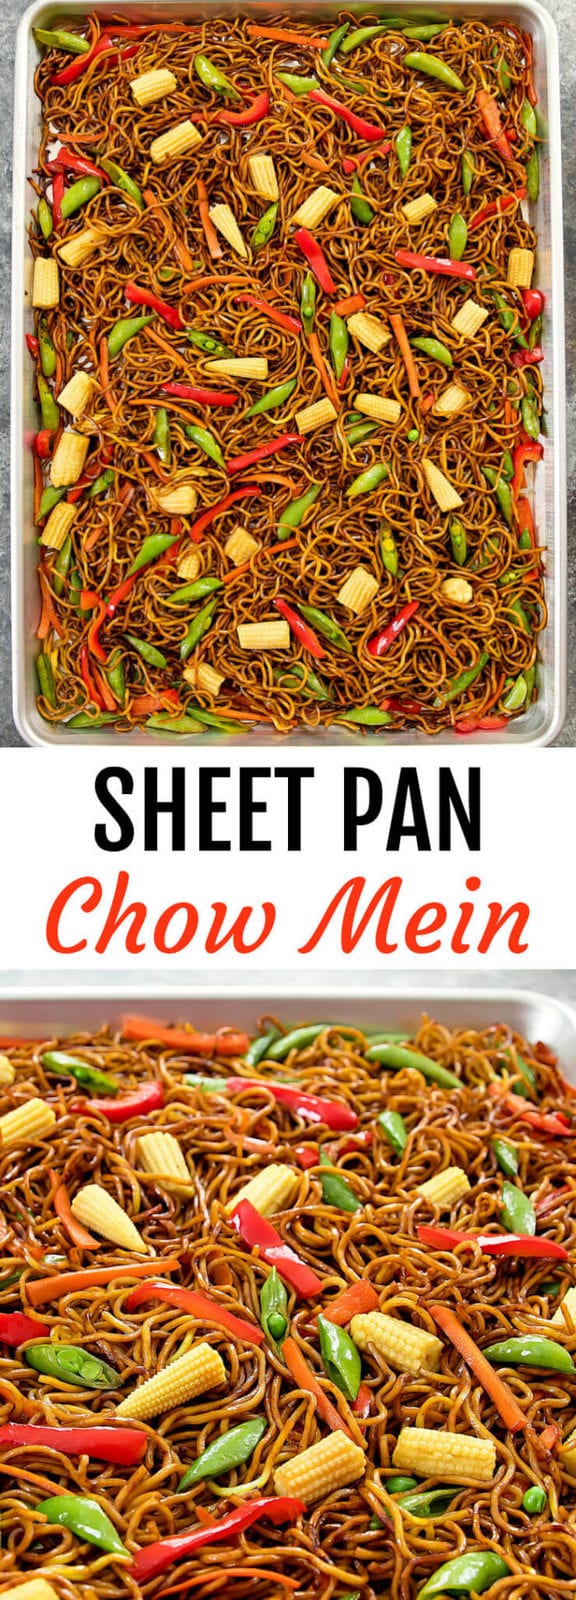 Sheet Pan Chow Mein